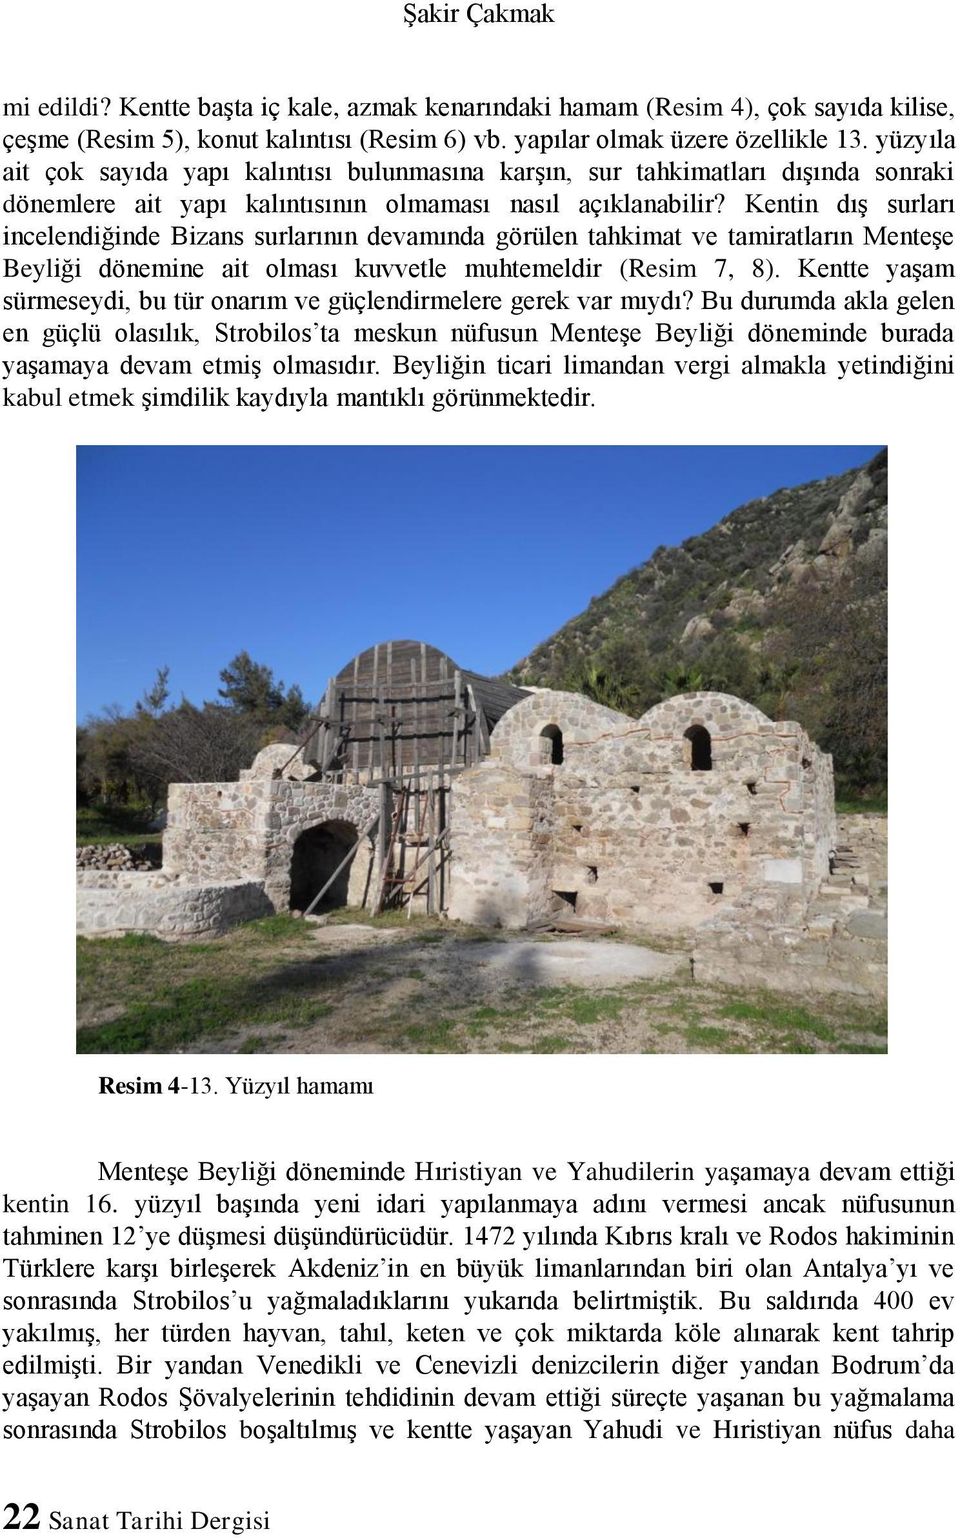 Kentin dış surları incelendiğinde Bizans surlarının devamında görülen tahkimat ve tamiratların Menteşe Beyliği dönemine ait olması kuvvetle muhtemeldir (Resim 7, 8).